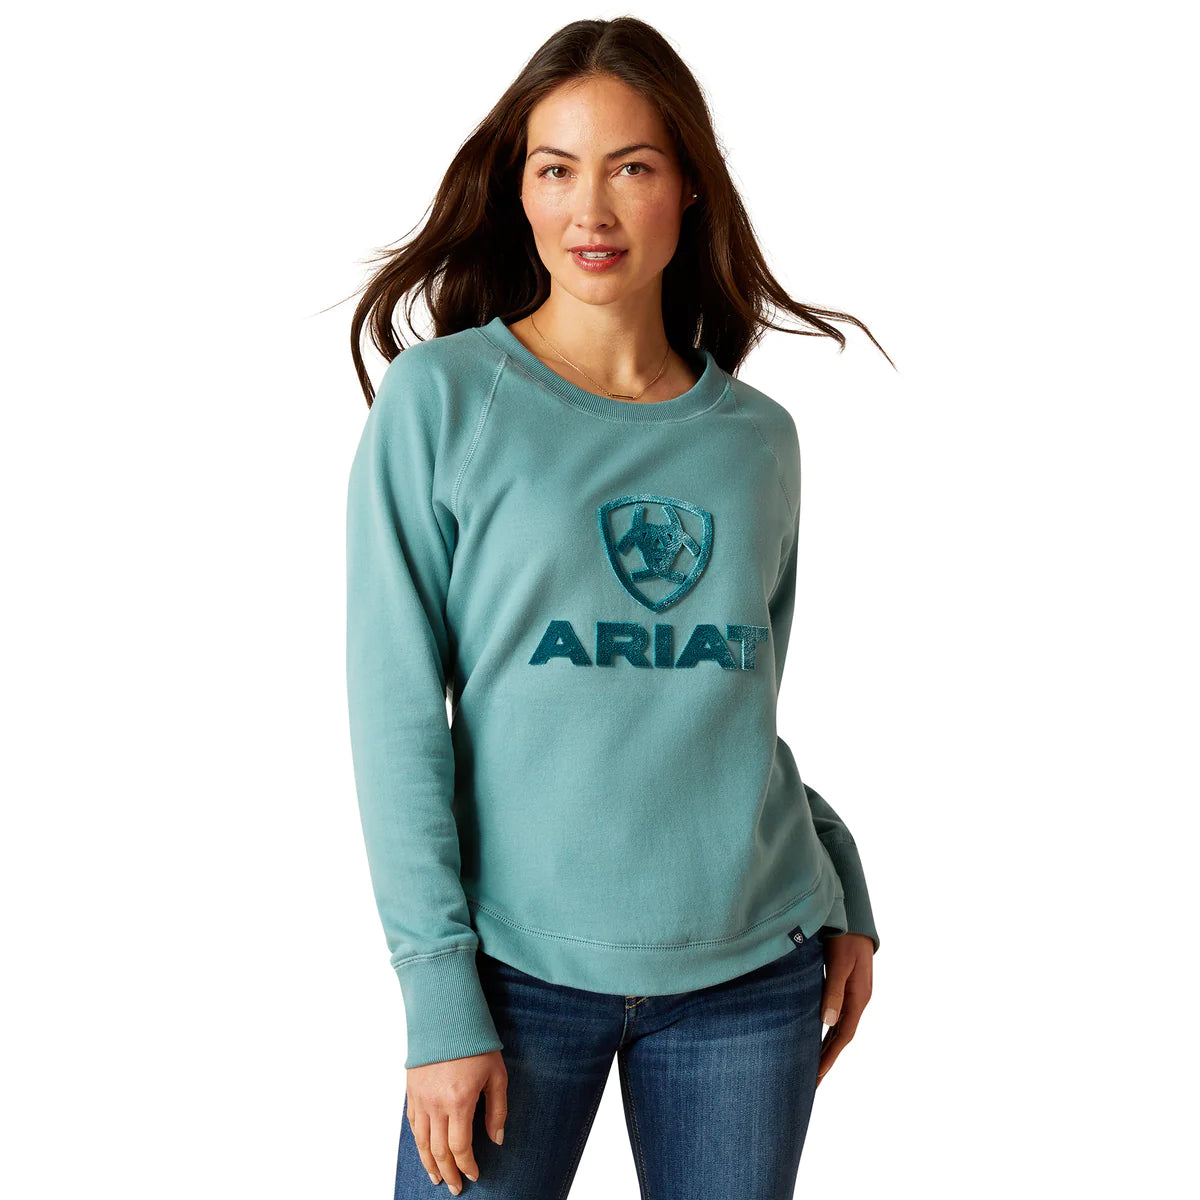 Ariat Women's Benicia Sweatshirt - Arctic